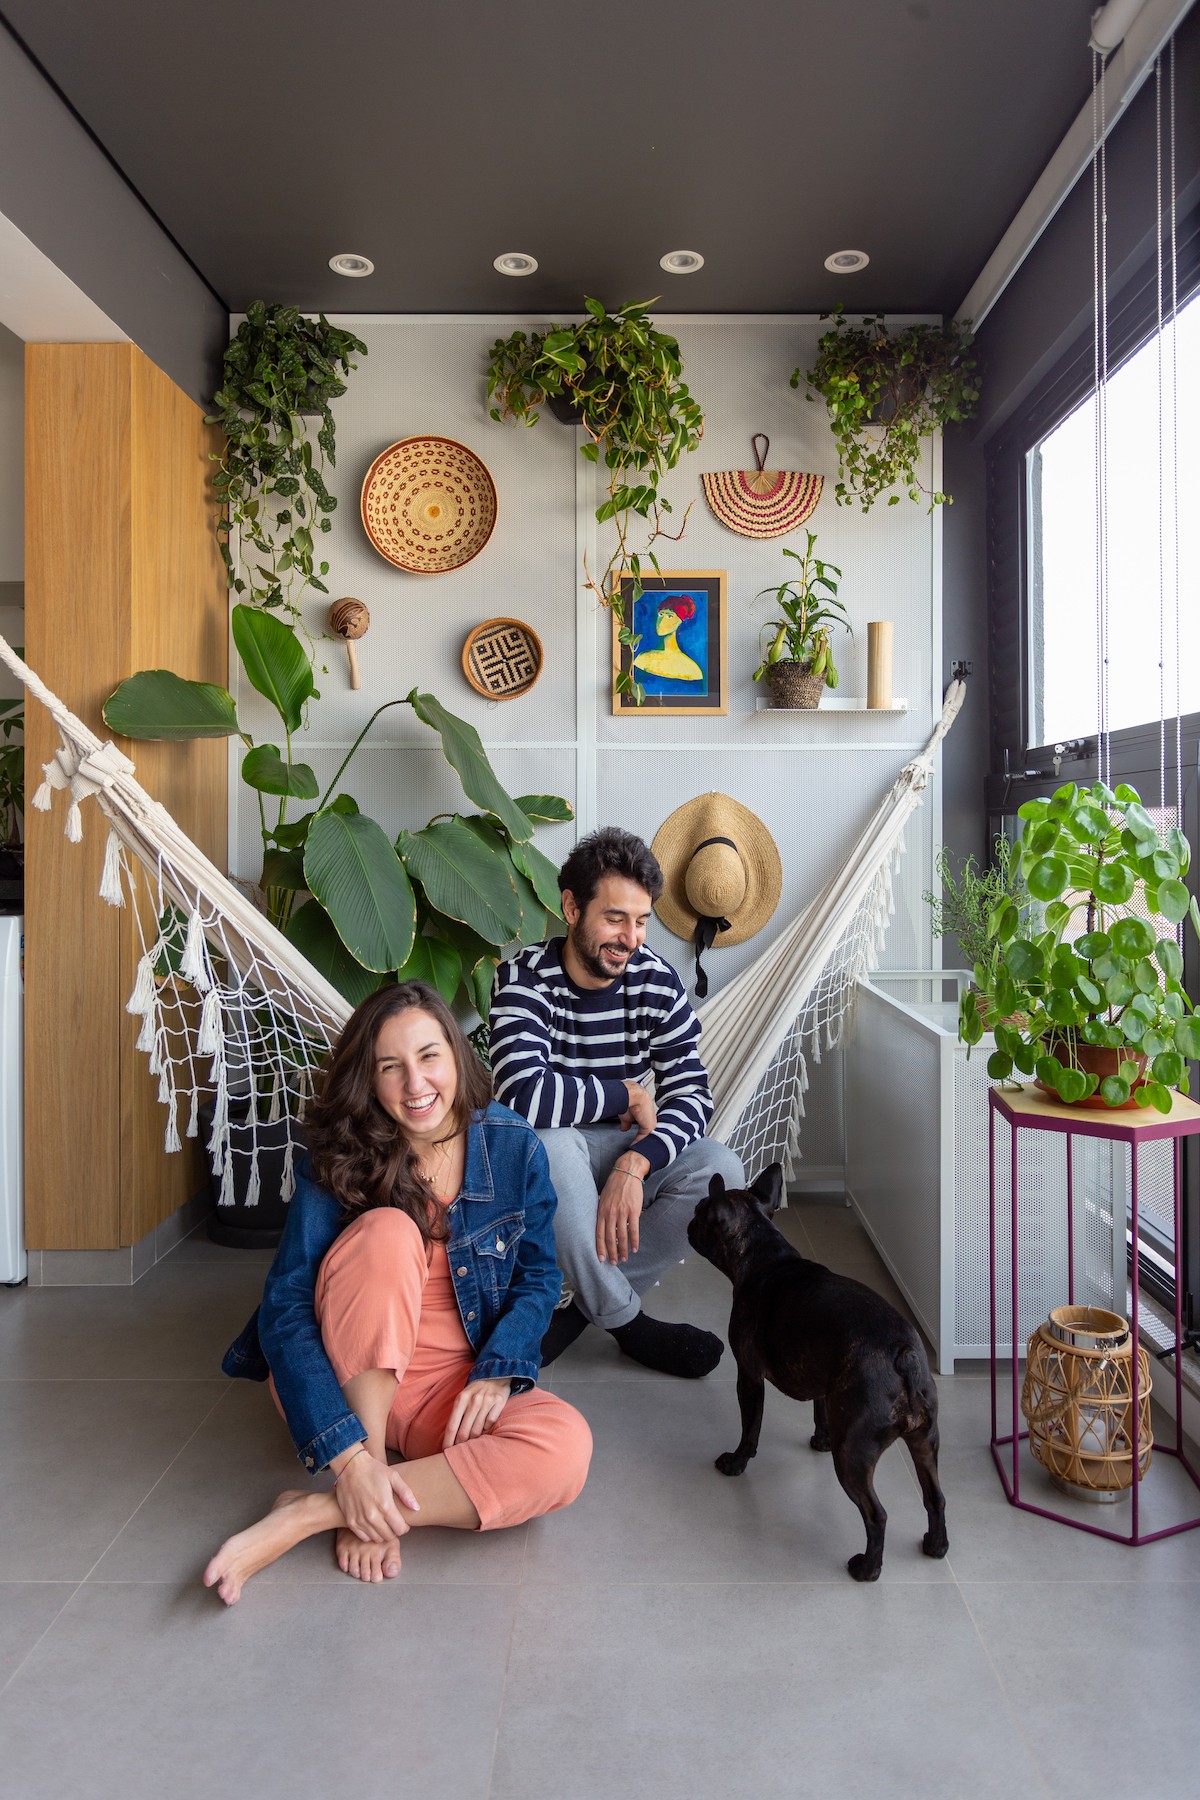 VARANDA | O trio de moradores aproveita a varanda, com a rede posicionada para proporcionar relaxamento e um ambiente para descanso (Foto: Divulgação / Leila Viegas)